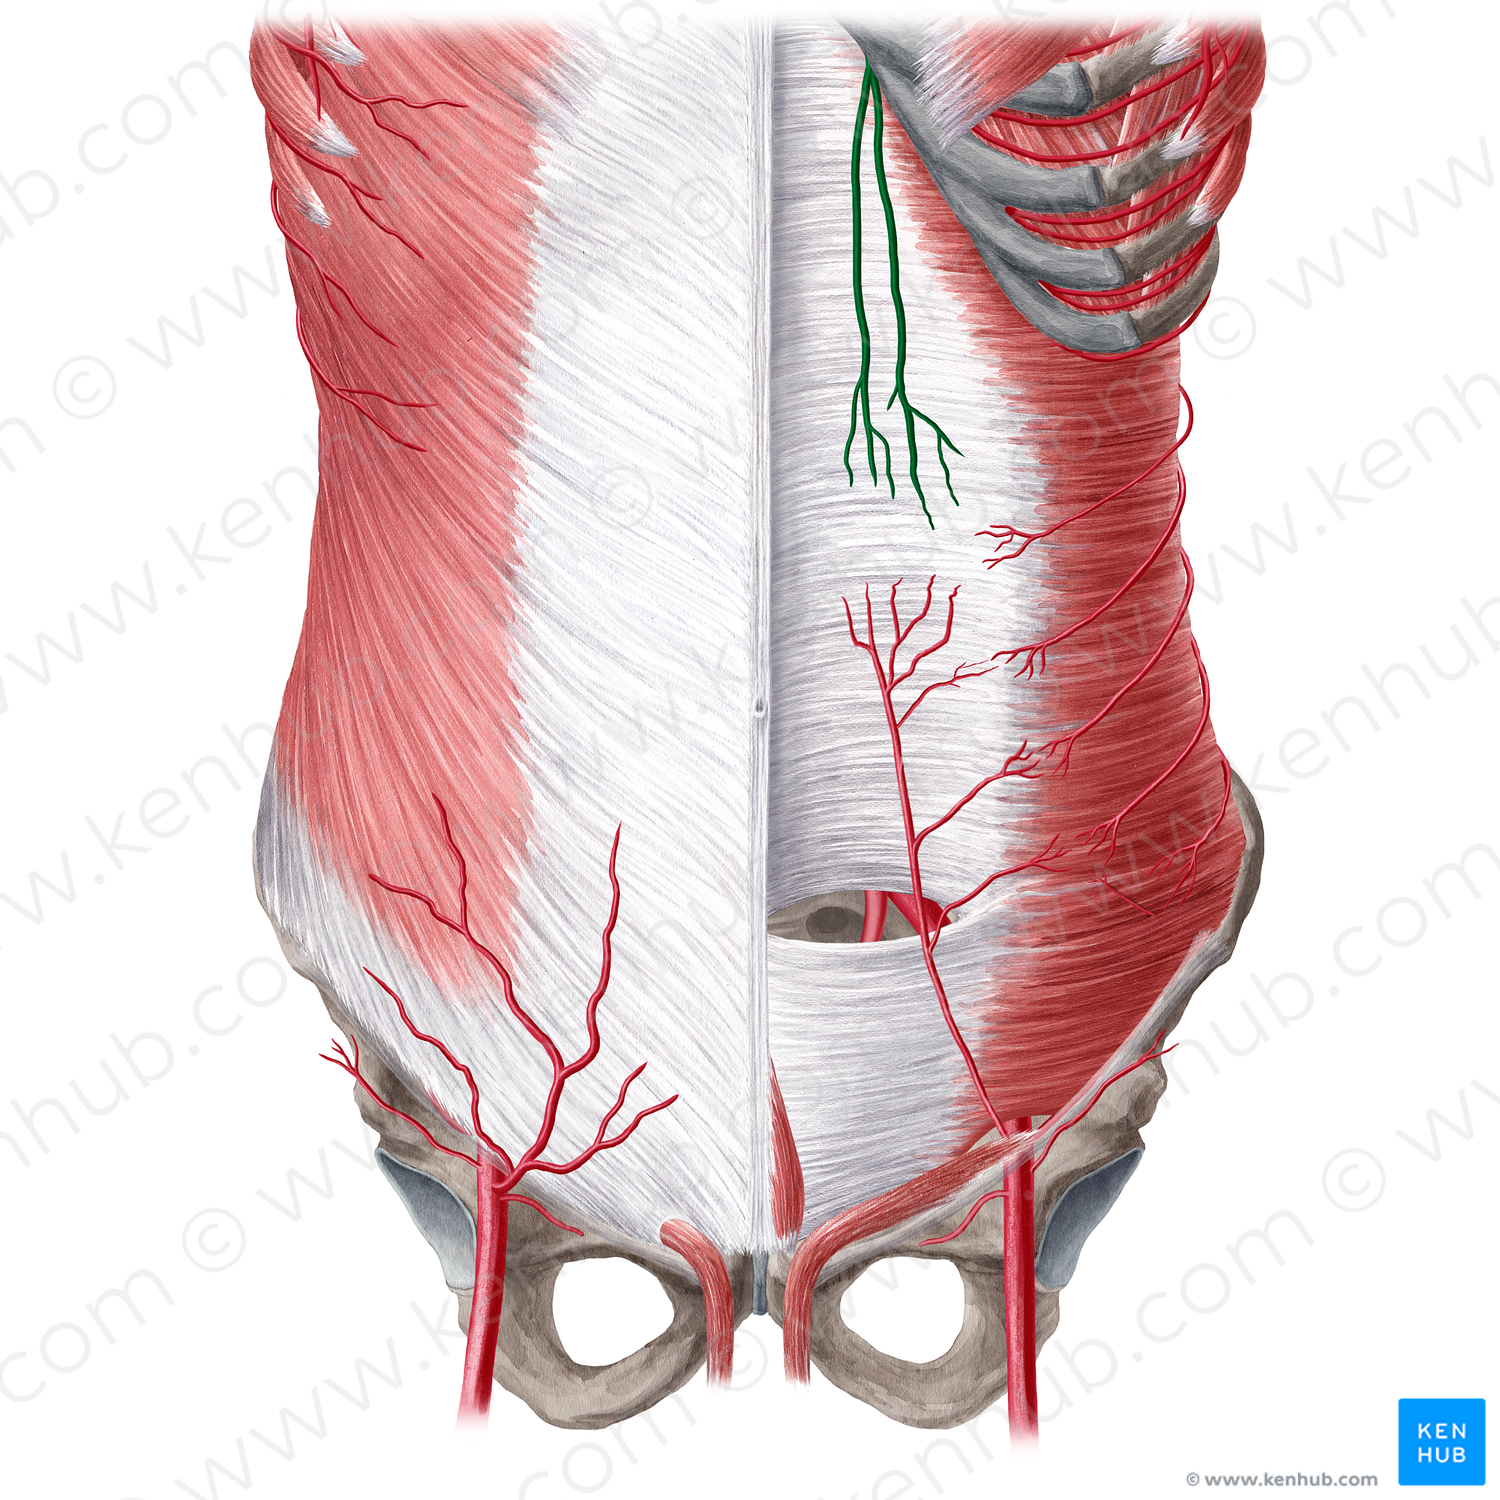 Superior epigastric artery (#1197)